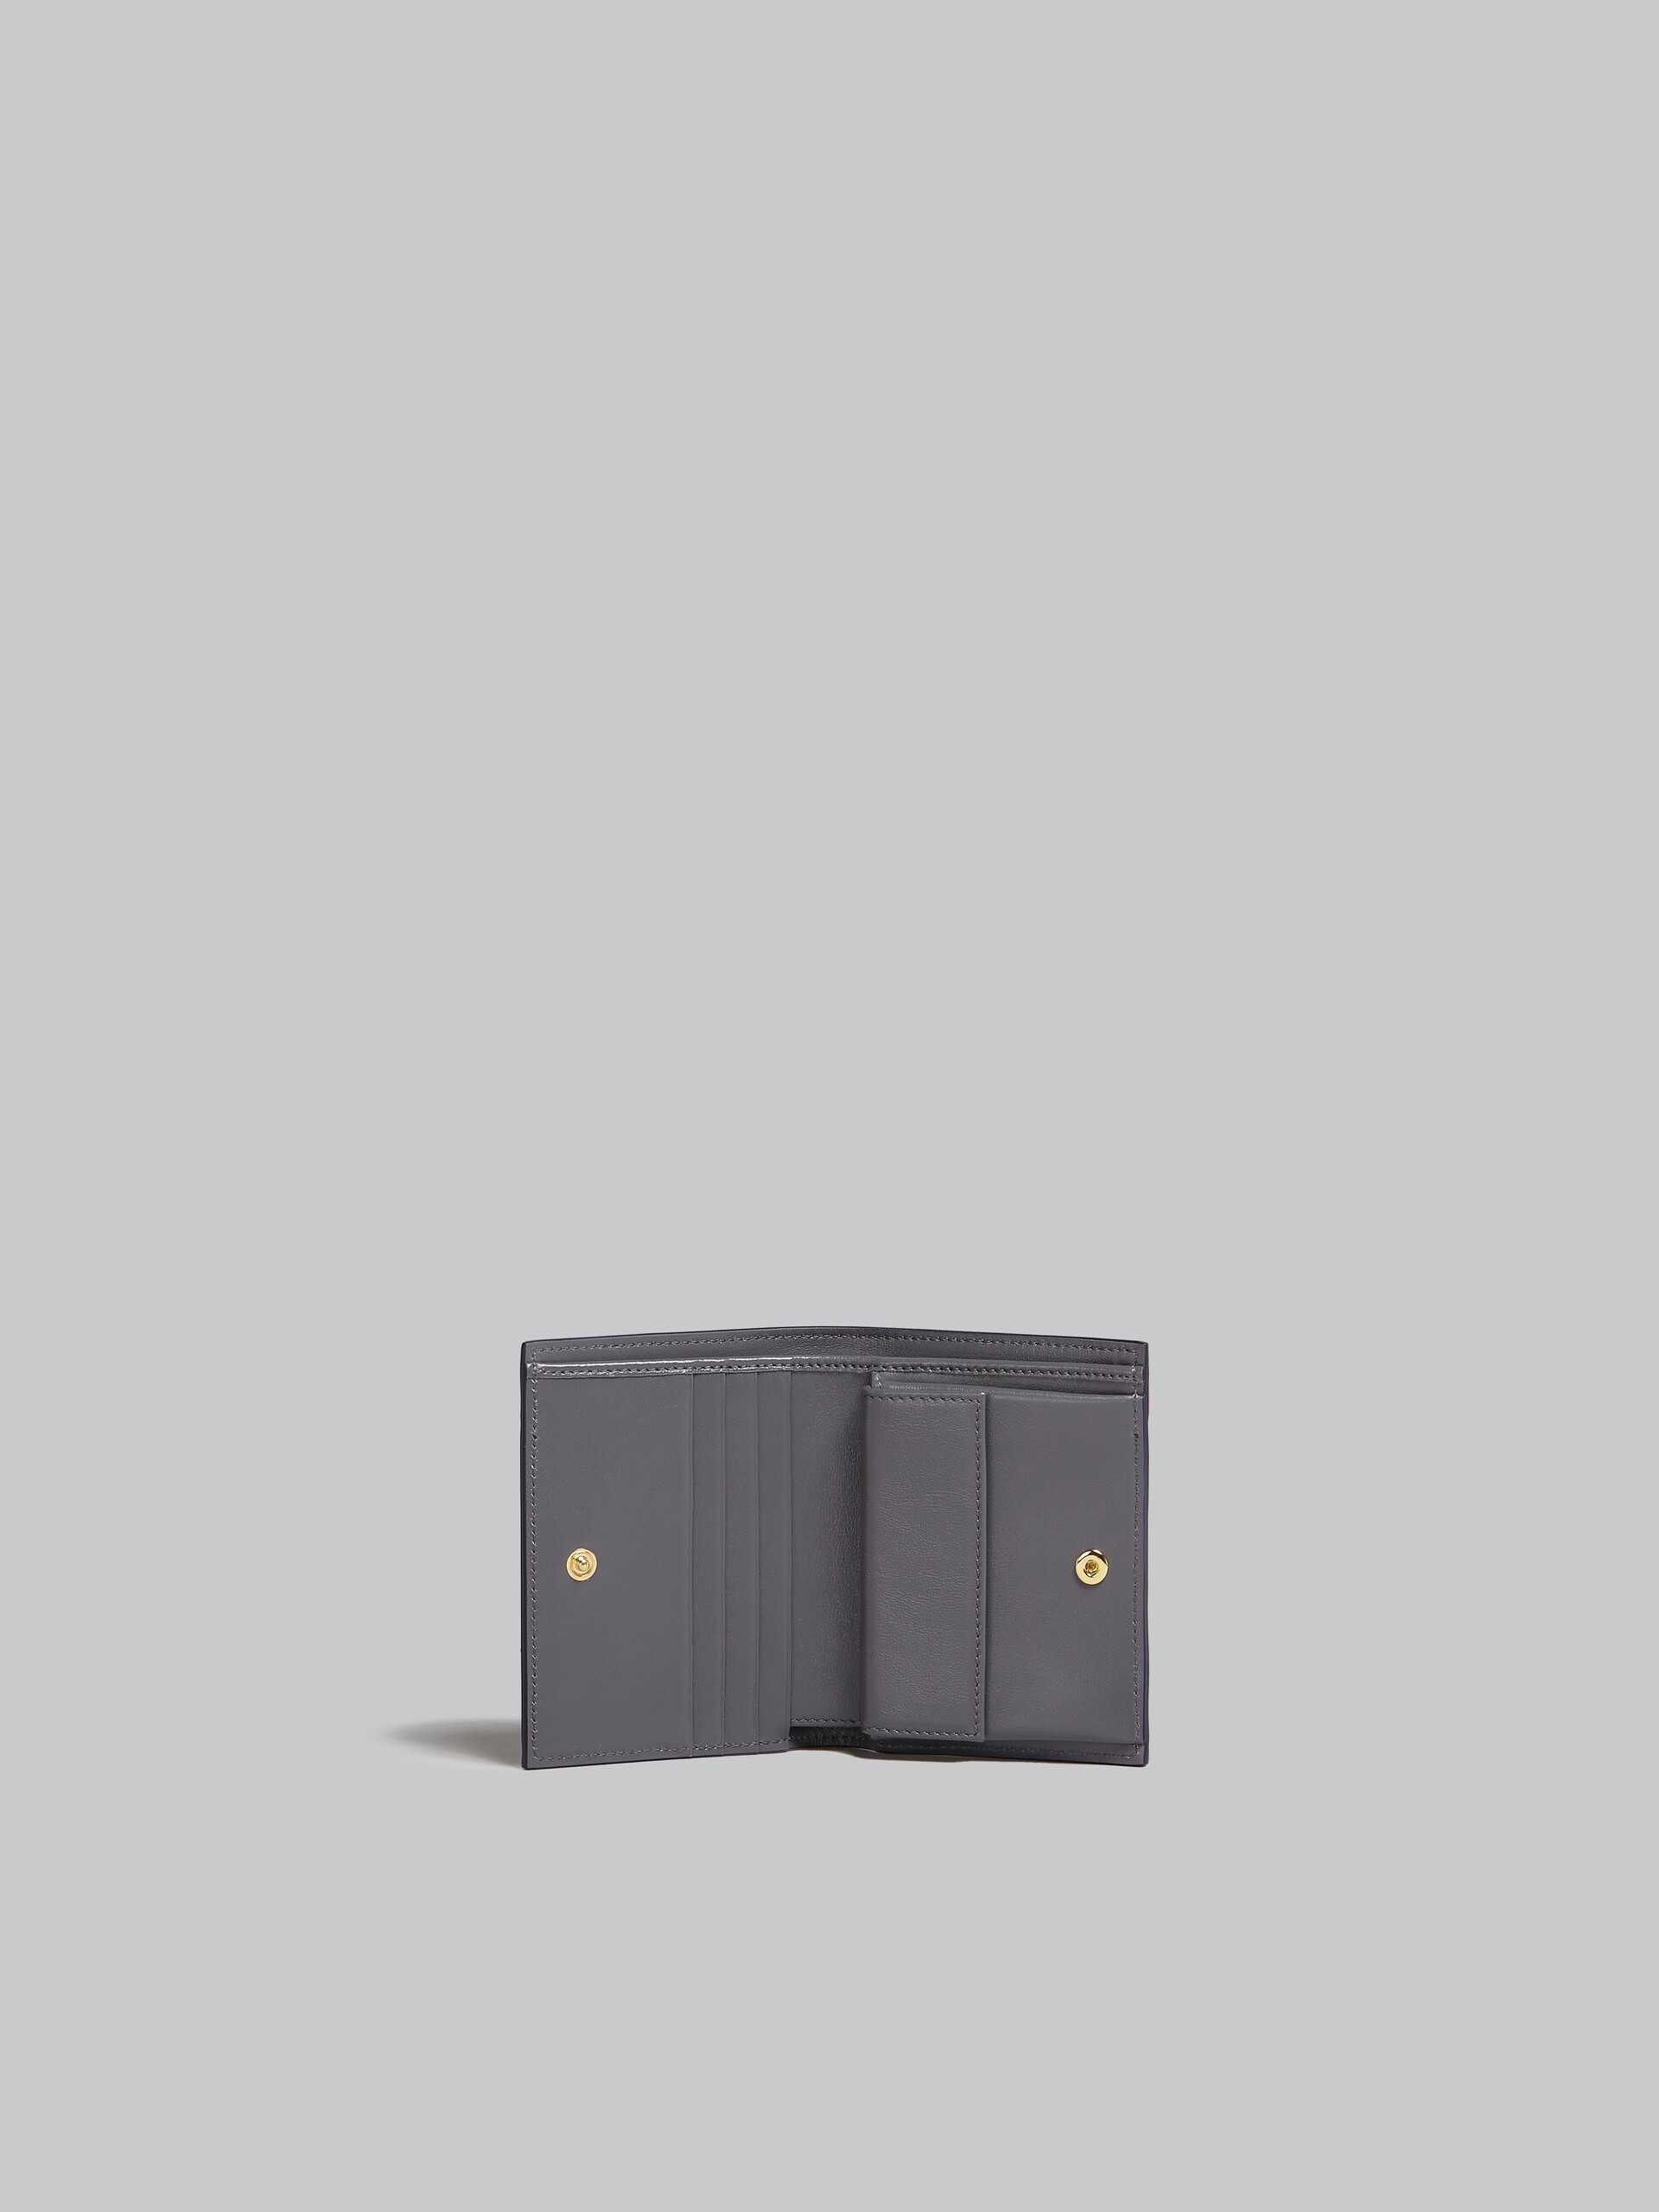 Portafoglio bi-fold in pelle grigia e nera - Portafogli - Image 2